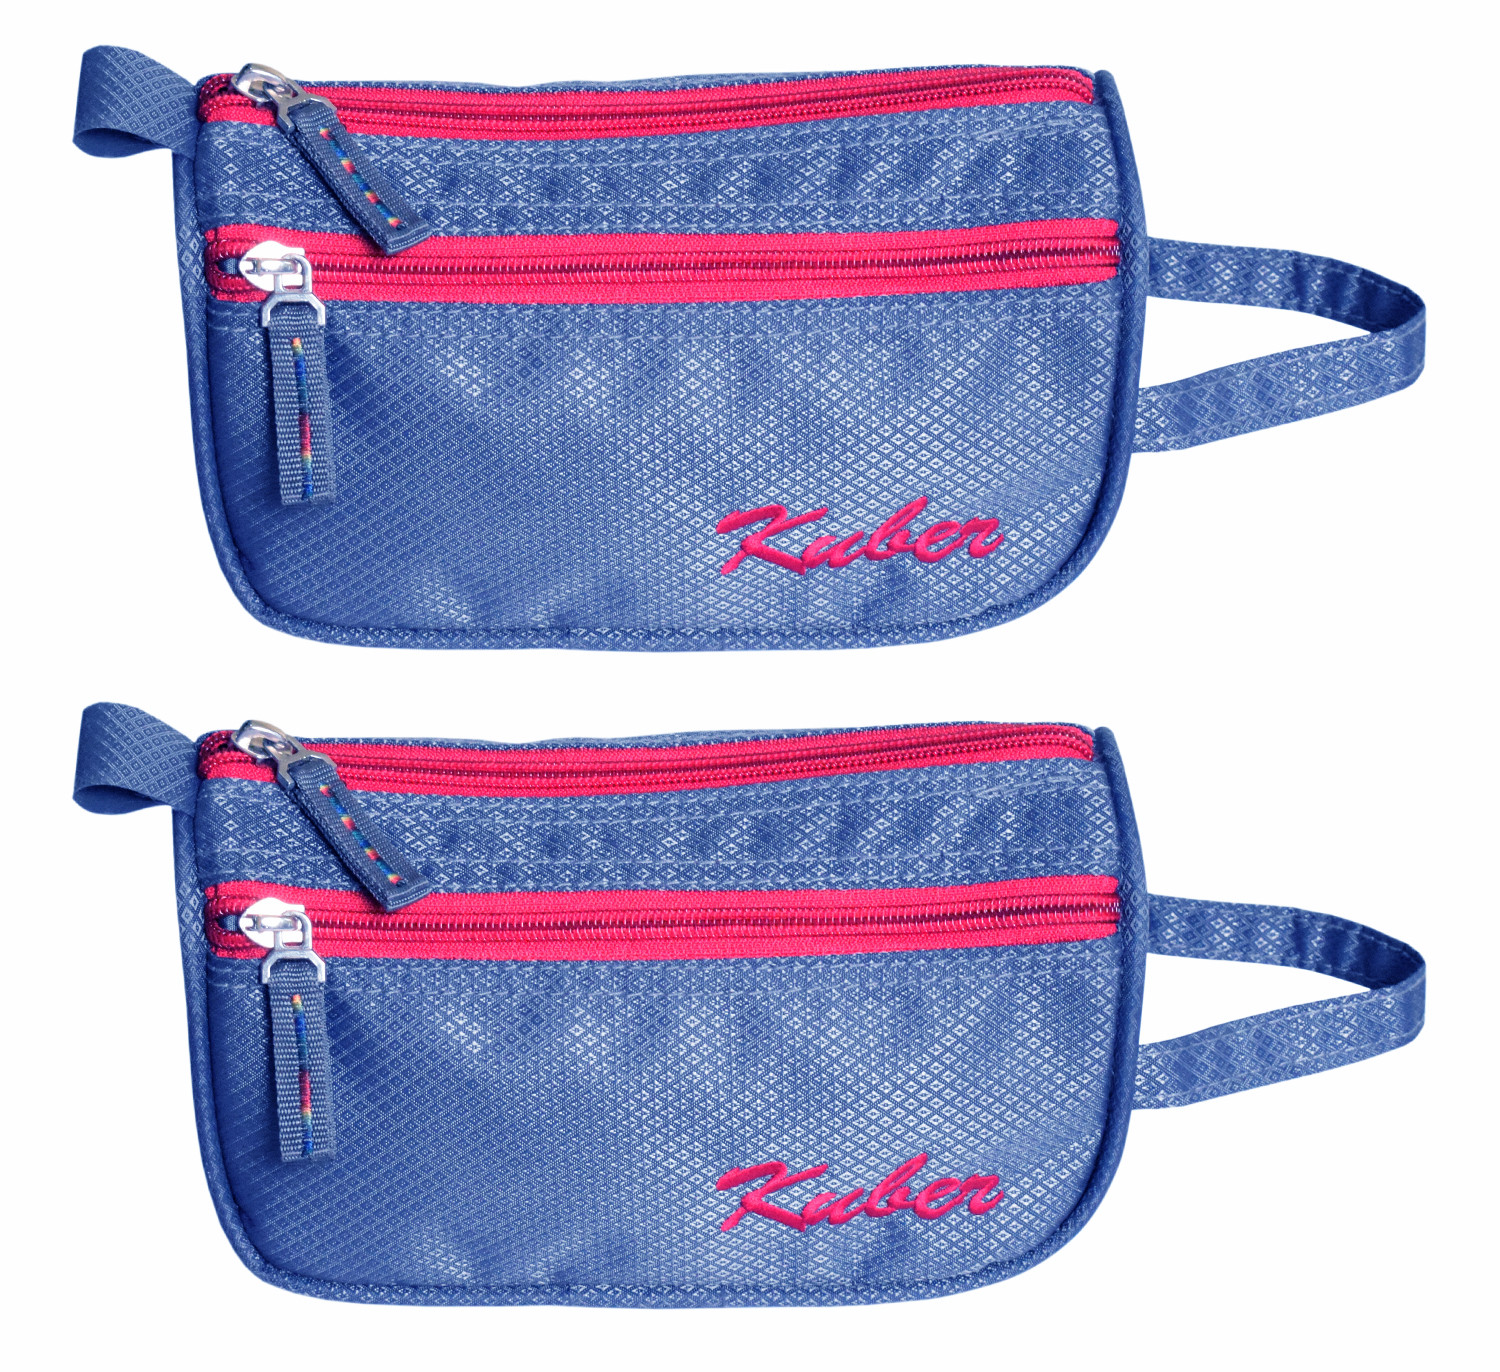 Kuber Industries Travel Toiletry Bag Shaving Dopp Kit (Blue)